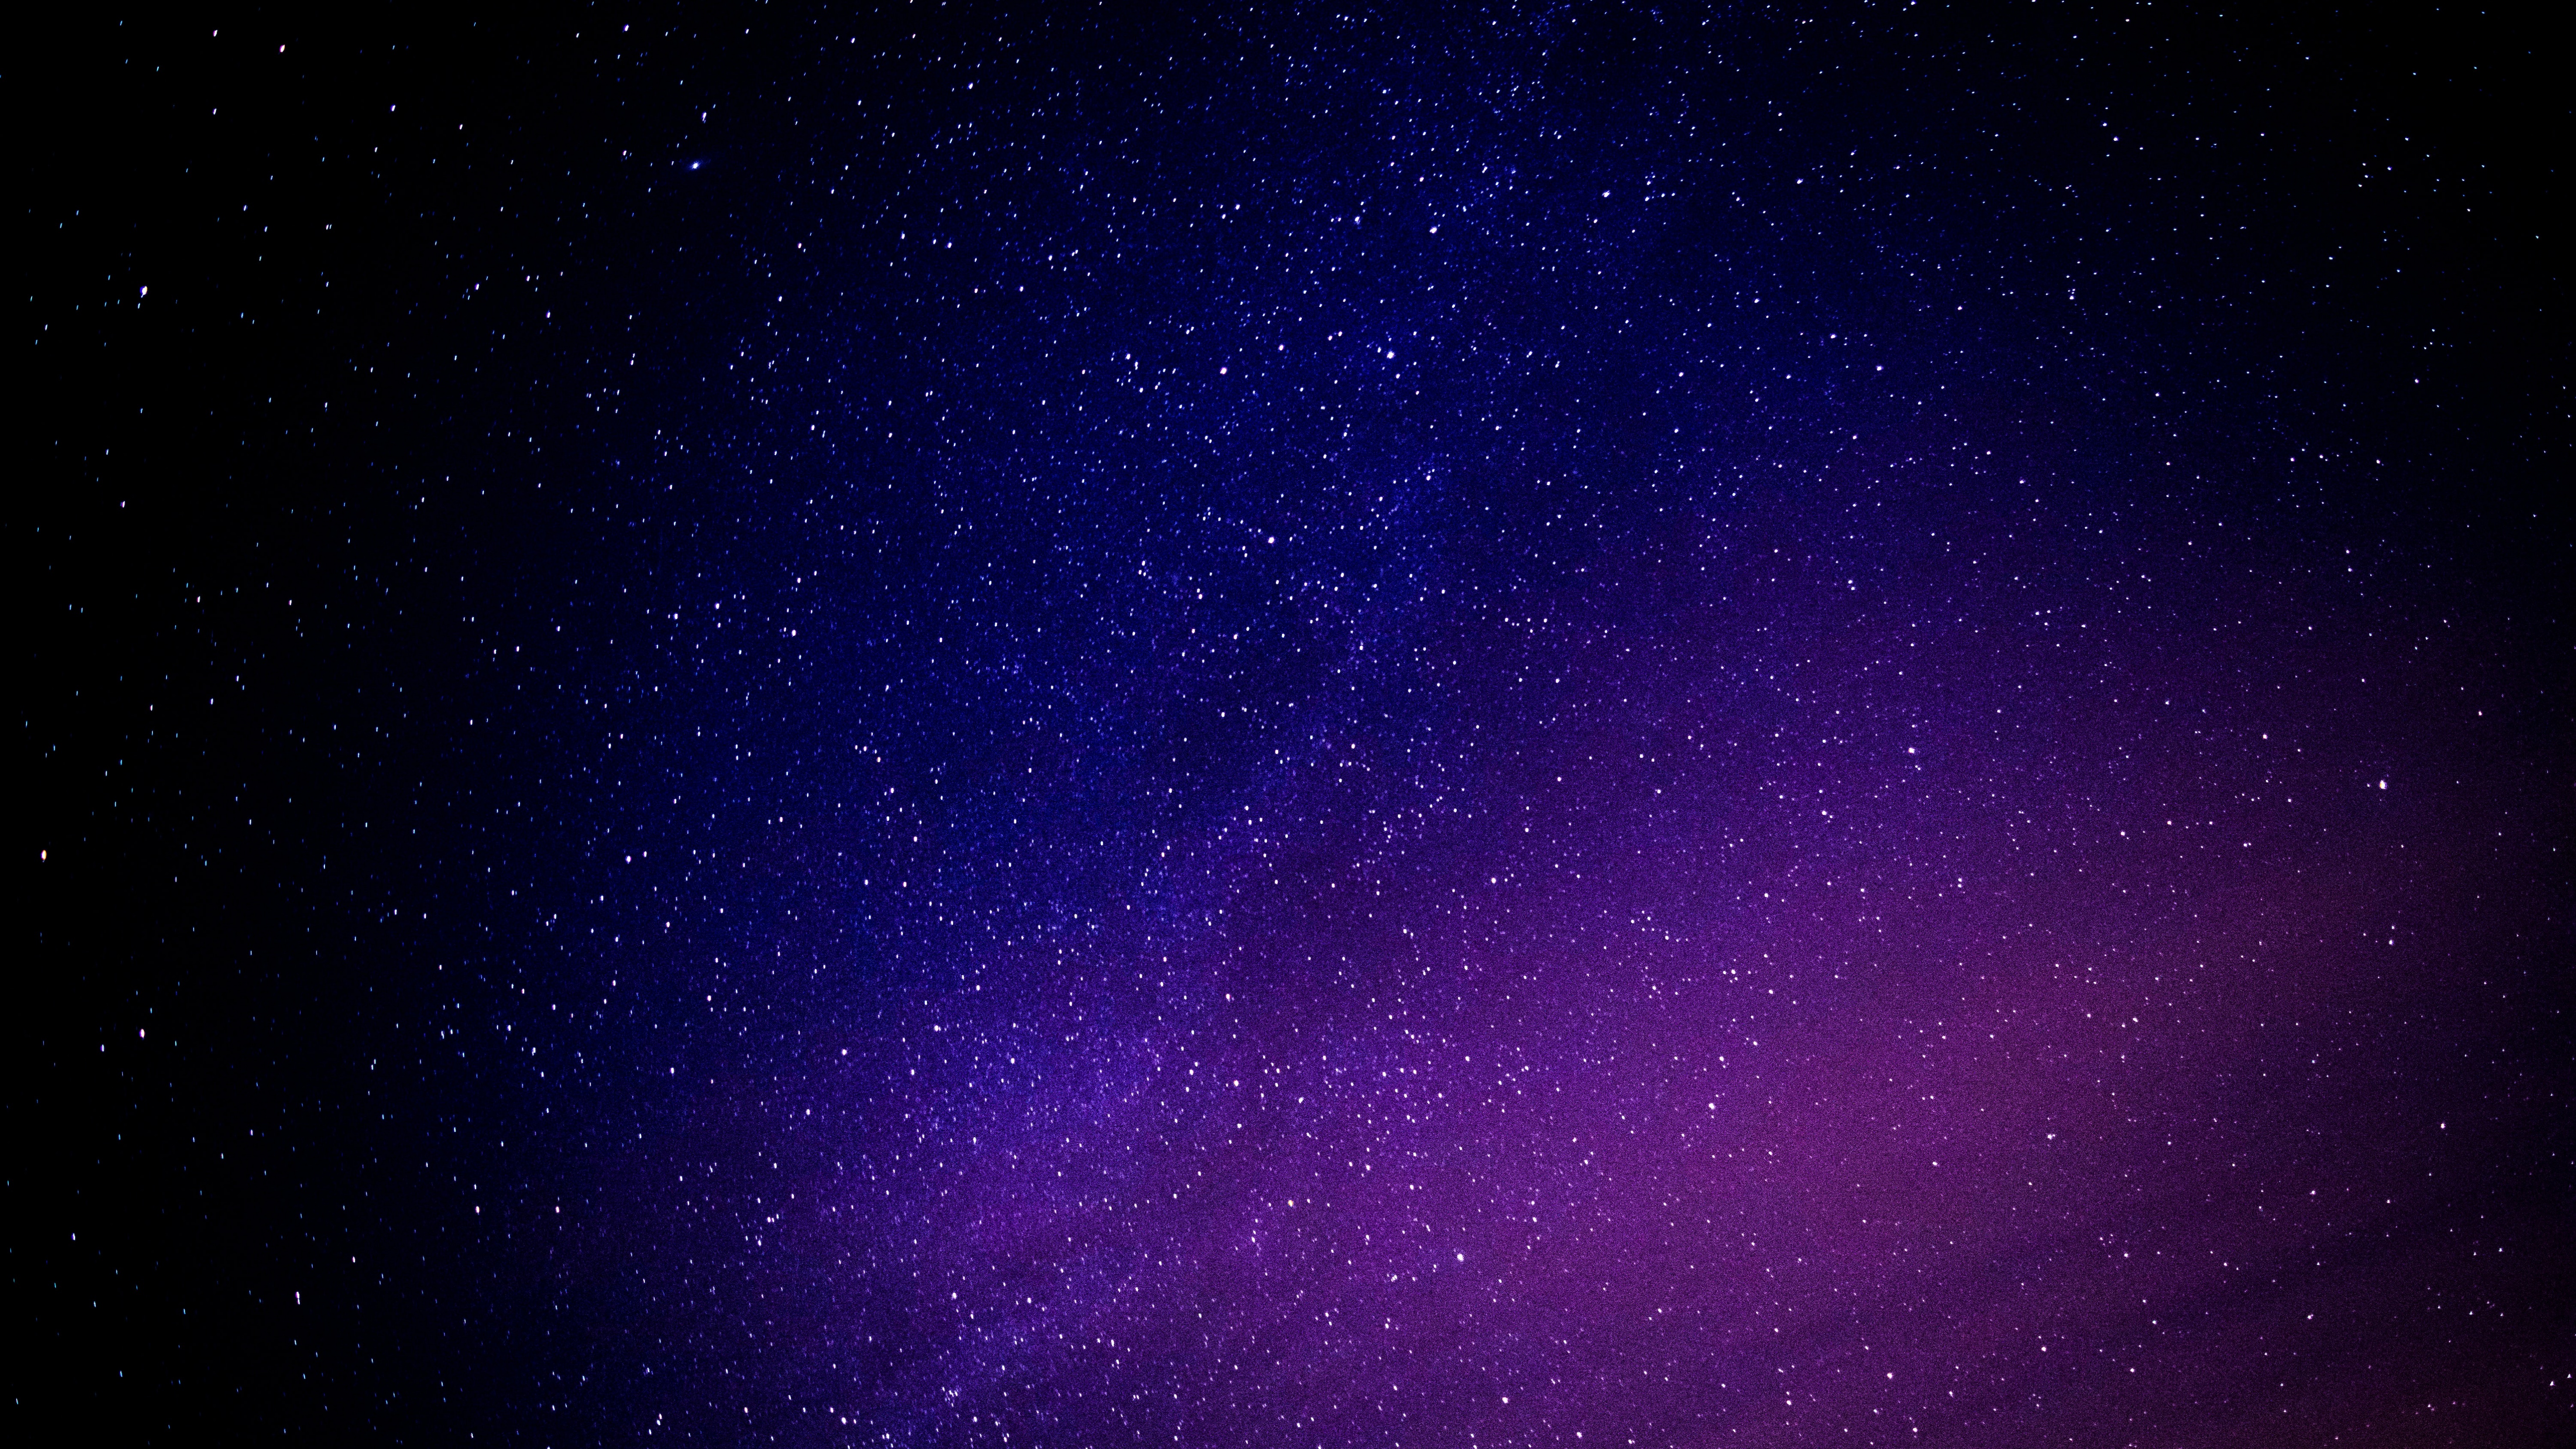 dark purple sky